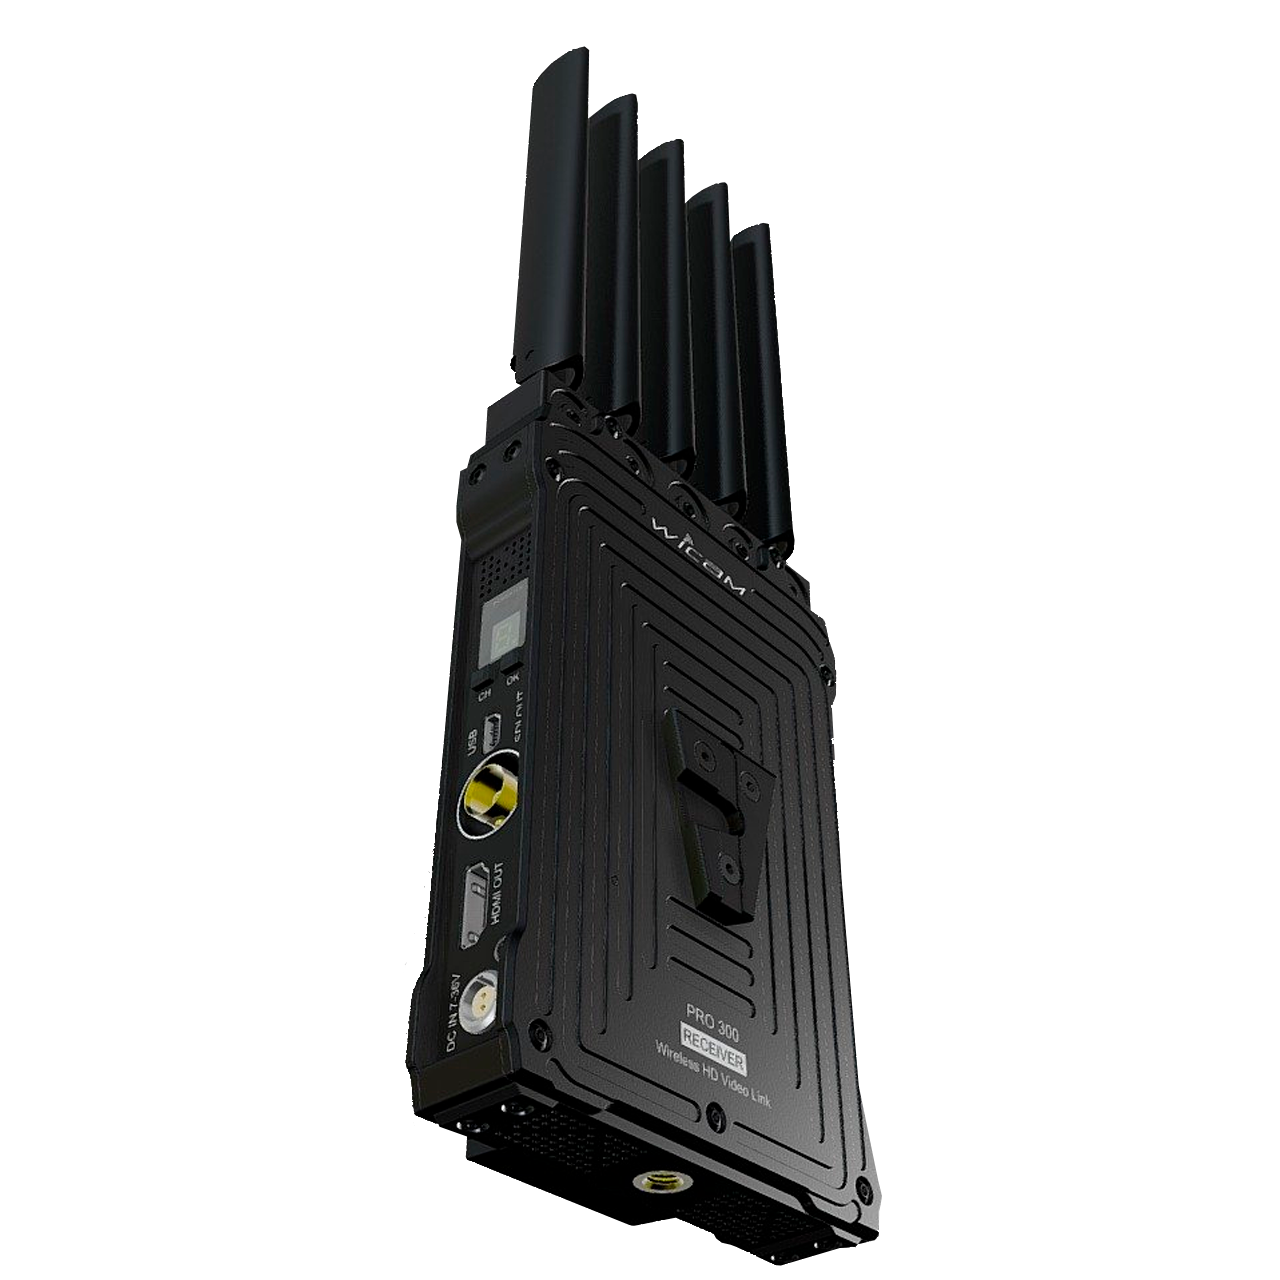 Аренда видеосендера Wicam для беспроводной передачи видеосигнала на расстояние до километра